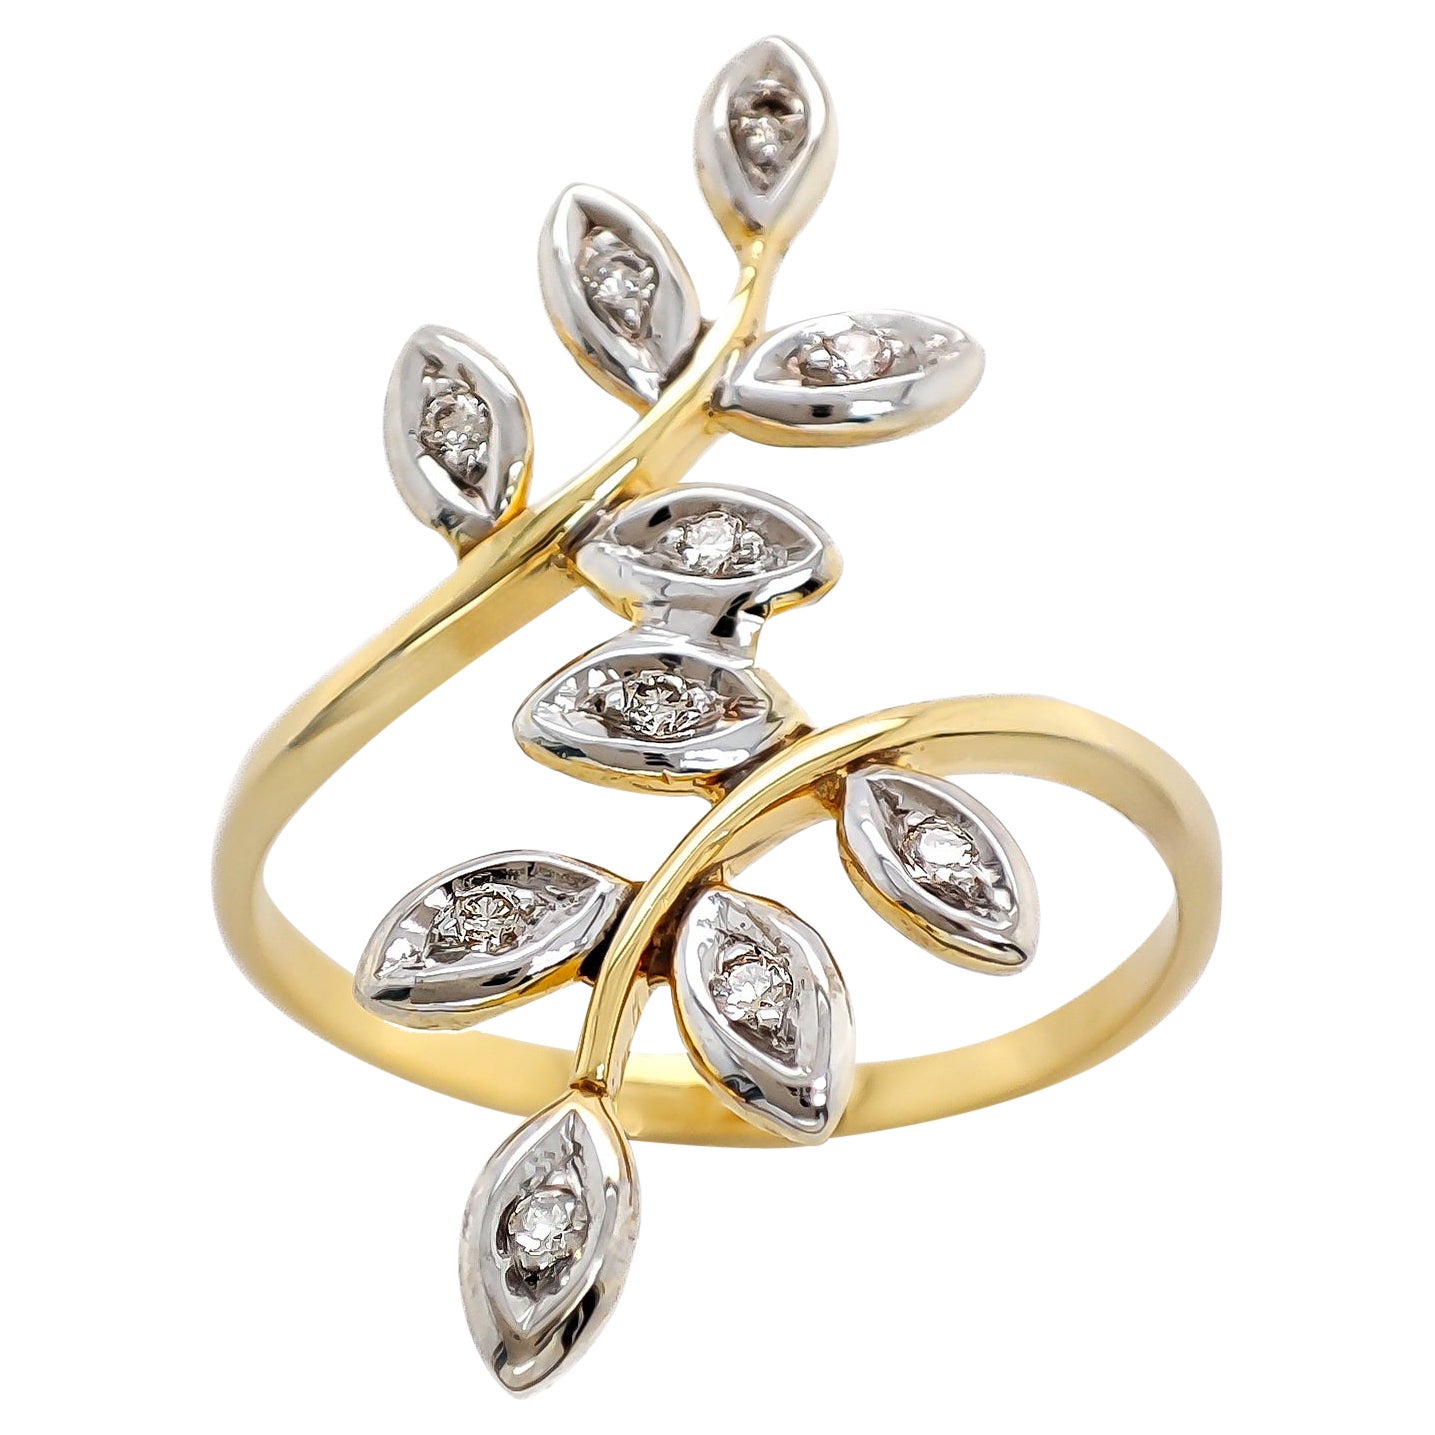 NO RESERVE PRICE  0.10Ct Round Diamond Ring 14K White & Yellow Gold